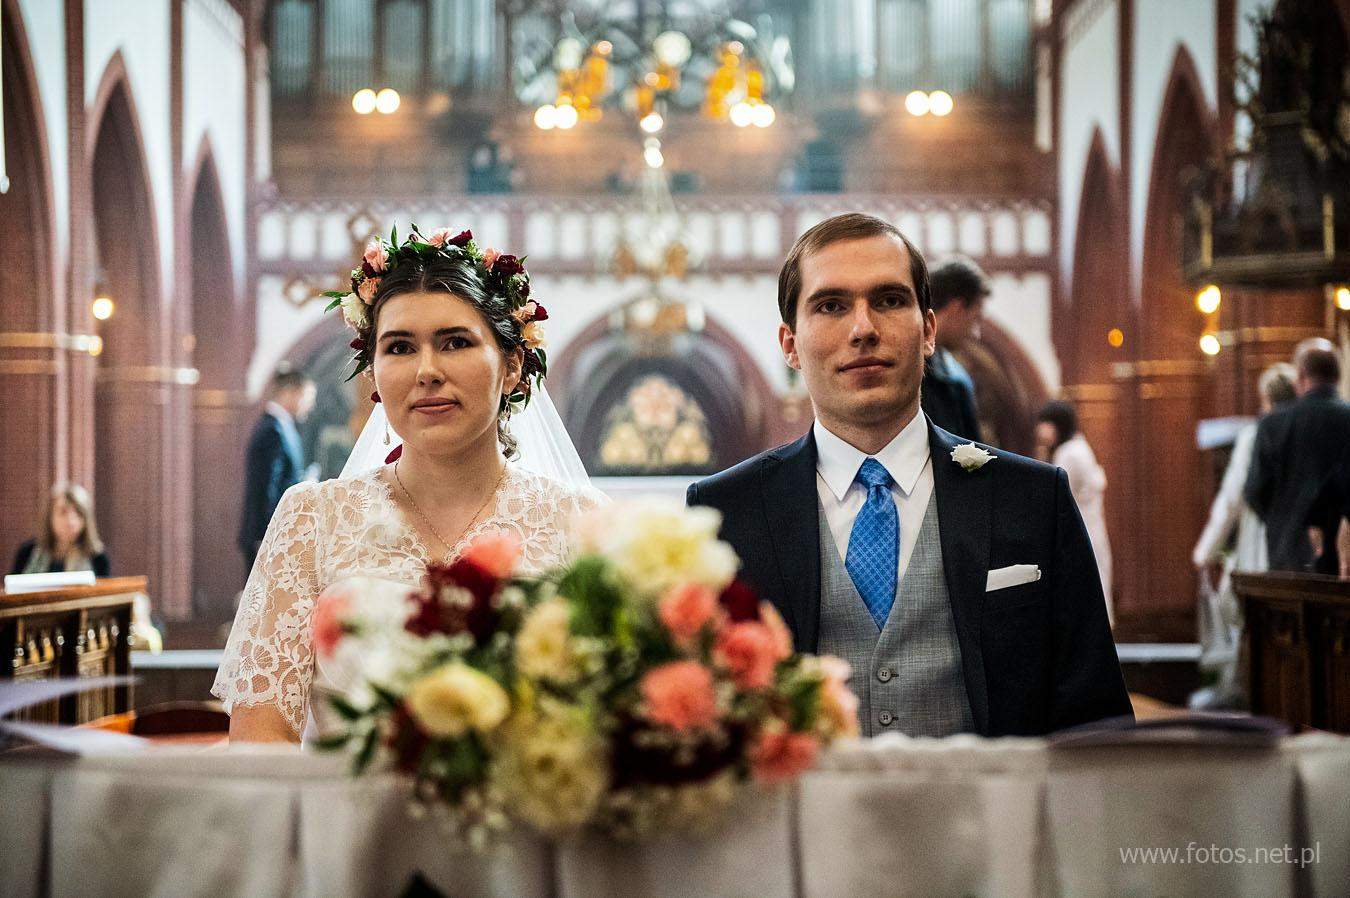 Unikalna ceremonia ślub w rycie trydenckim